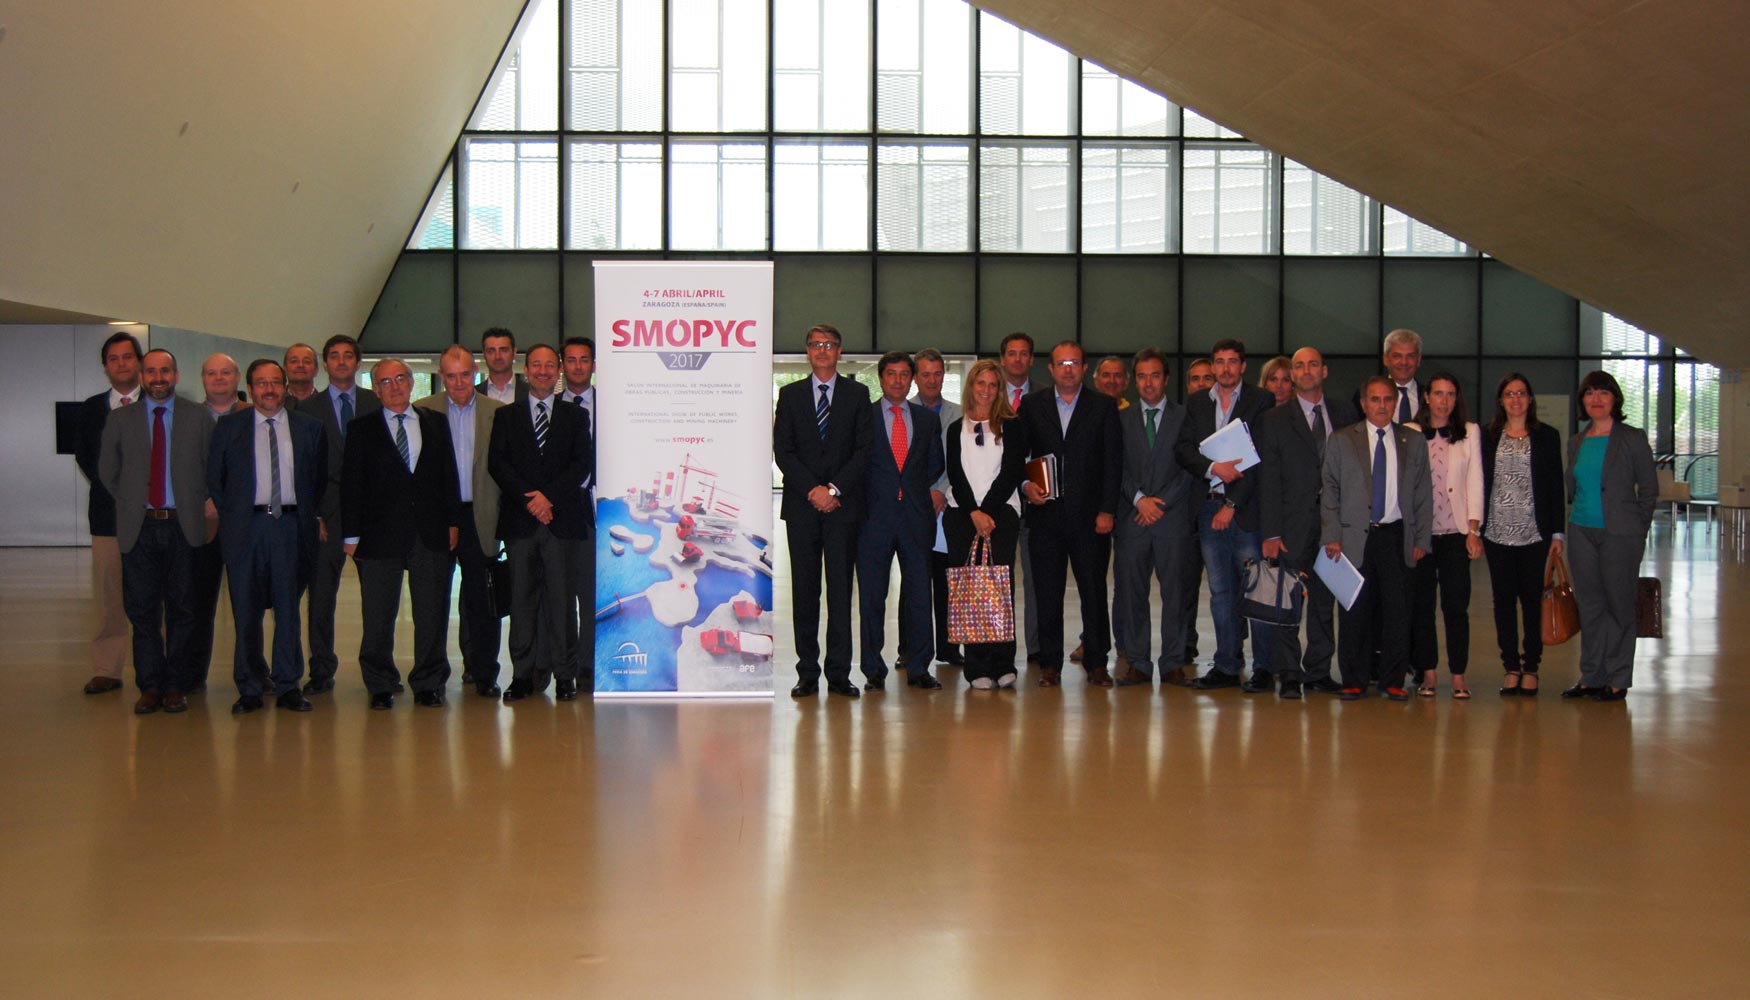 Foto de grupo con los miembros del Comit Organizador de Smopyc 2017